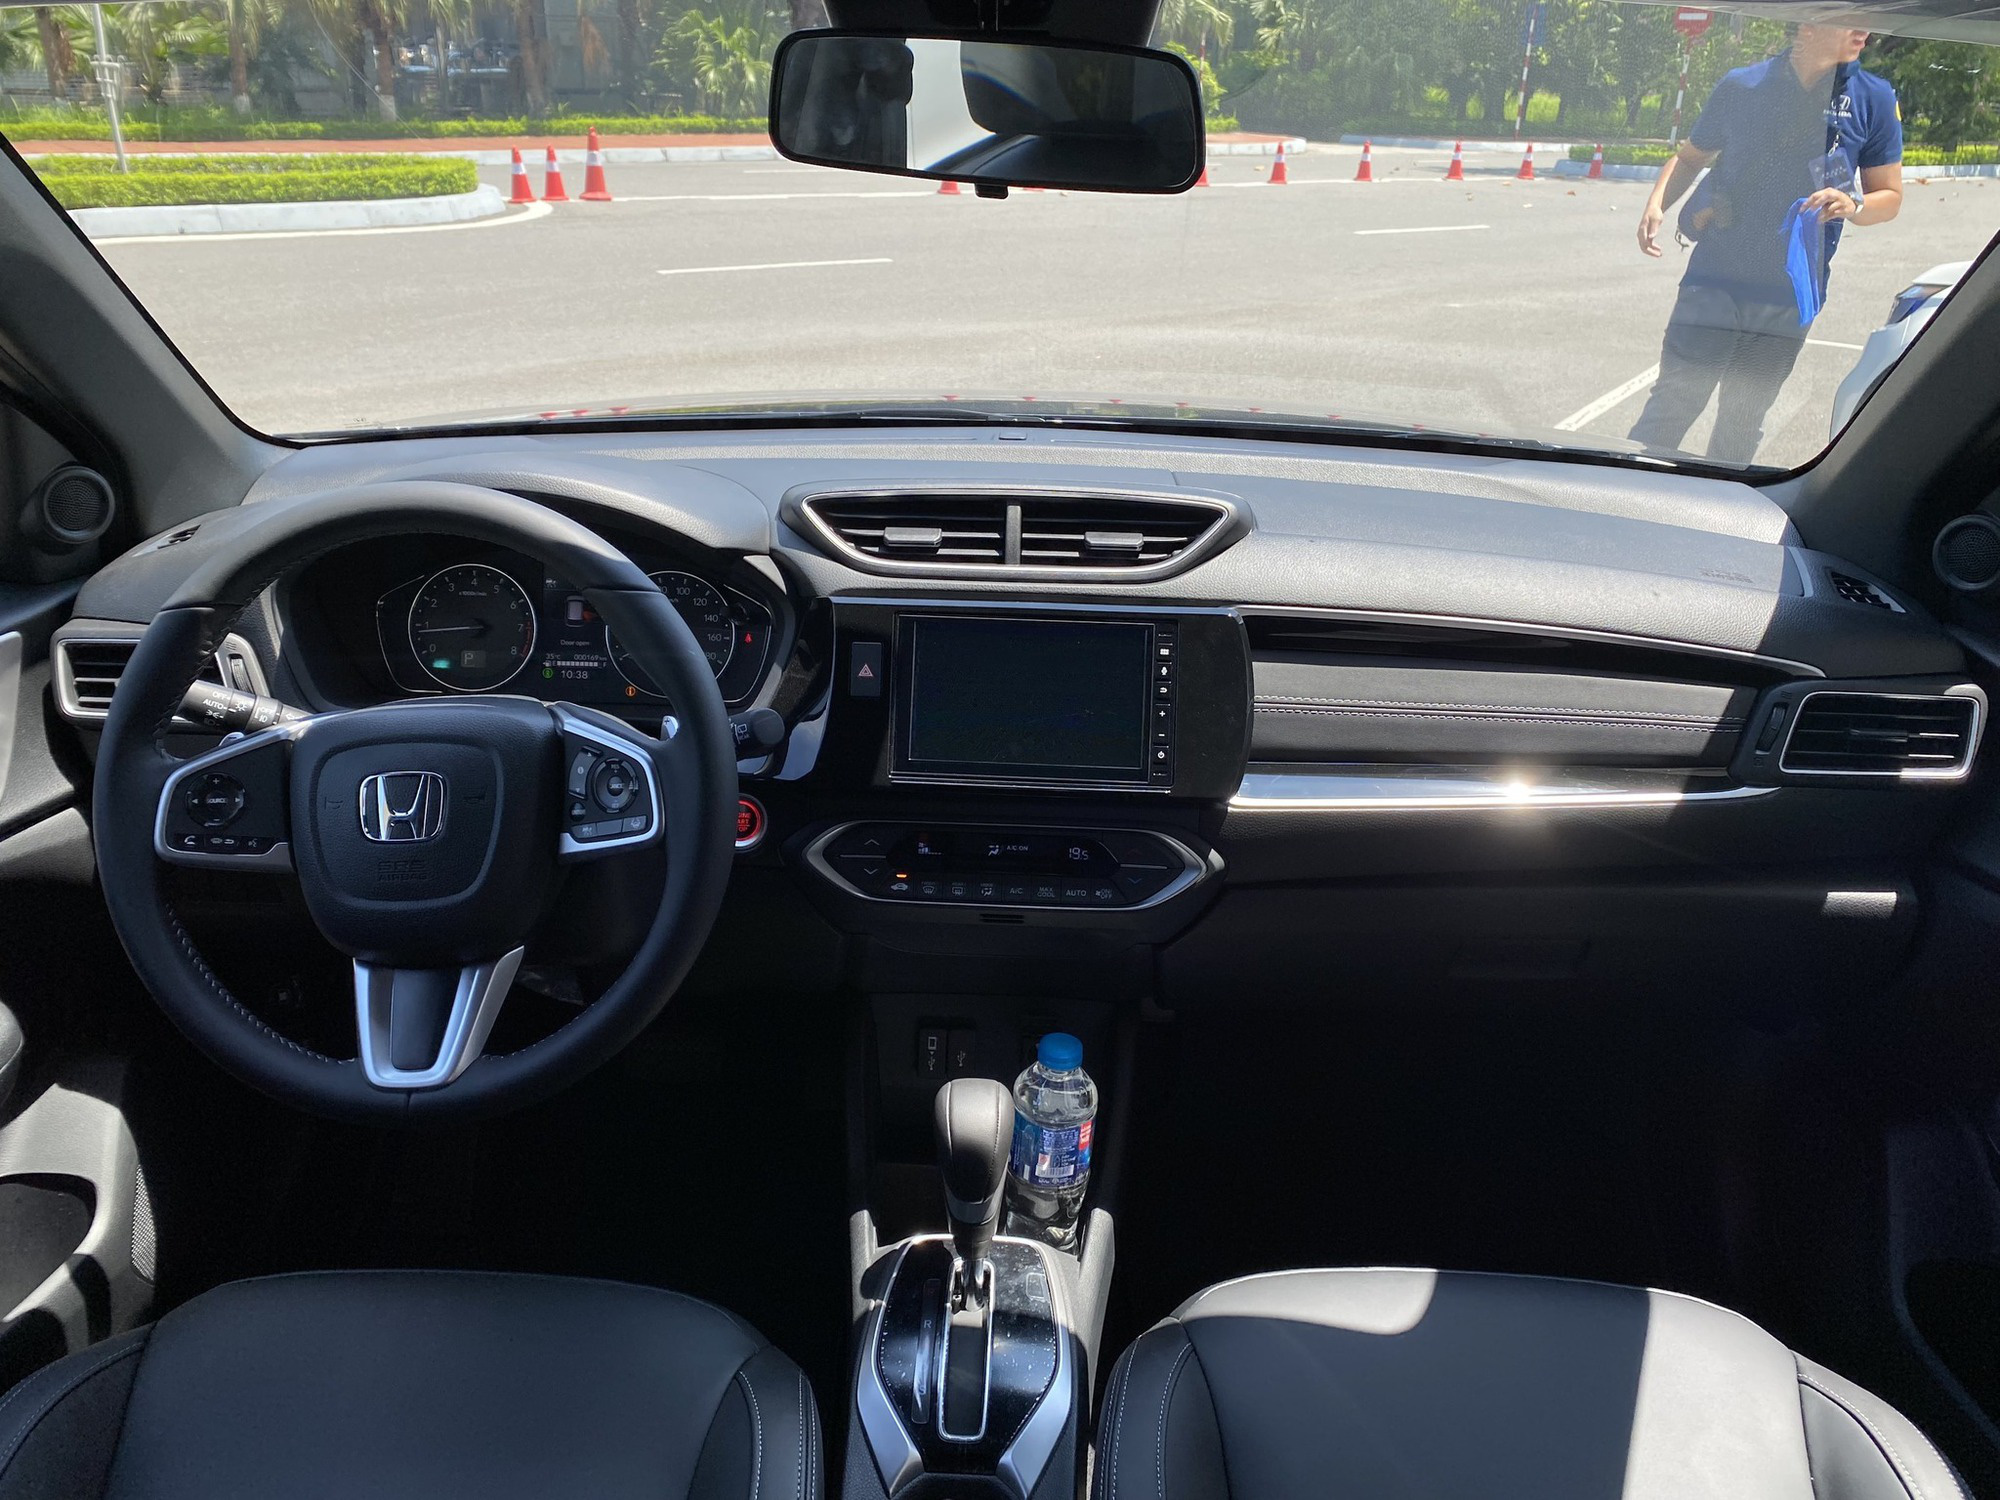 Ở bên trong, nội thất Honda BR-V có một số điểm tương tự CR-V như vô lăng và màn hình đặt thấp dưới cửa gió điều hòa. Một số trang bị tiện nghi đáng chú ý trên bản cao cấp (bản L) có ghế bọc da, màn hình cảm ứng 7 inch hỗ trợ Apple CarPlay/Android Auto, âm thanh 6 loa, đề nổ nút bấm, đề nổ từ xa, điều hòa tự động. Xe vẫn dùng phanh tay dạng cơ. Bản G thấp hơn chỉ có ghế nỉ và điều hòa chỉnh tay, không có đề nổ xe từ xa - 